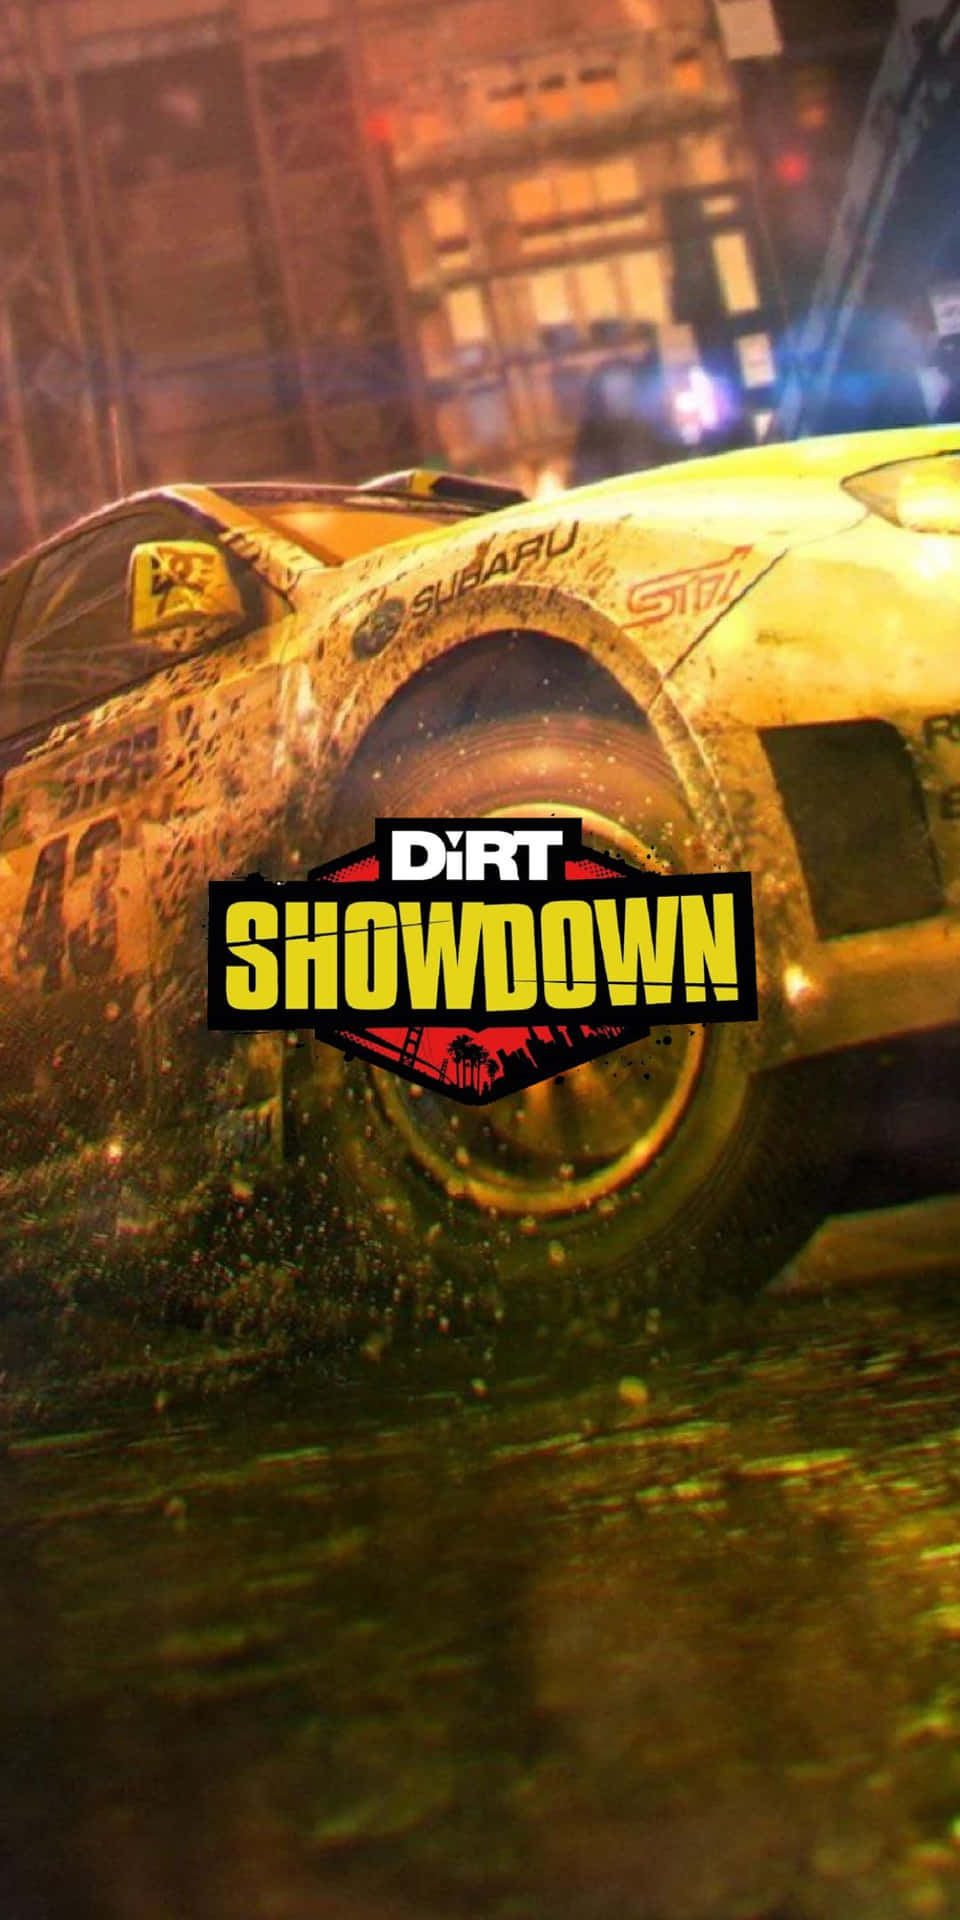 Dirt Showdown - Pc - Pc Game